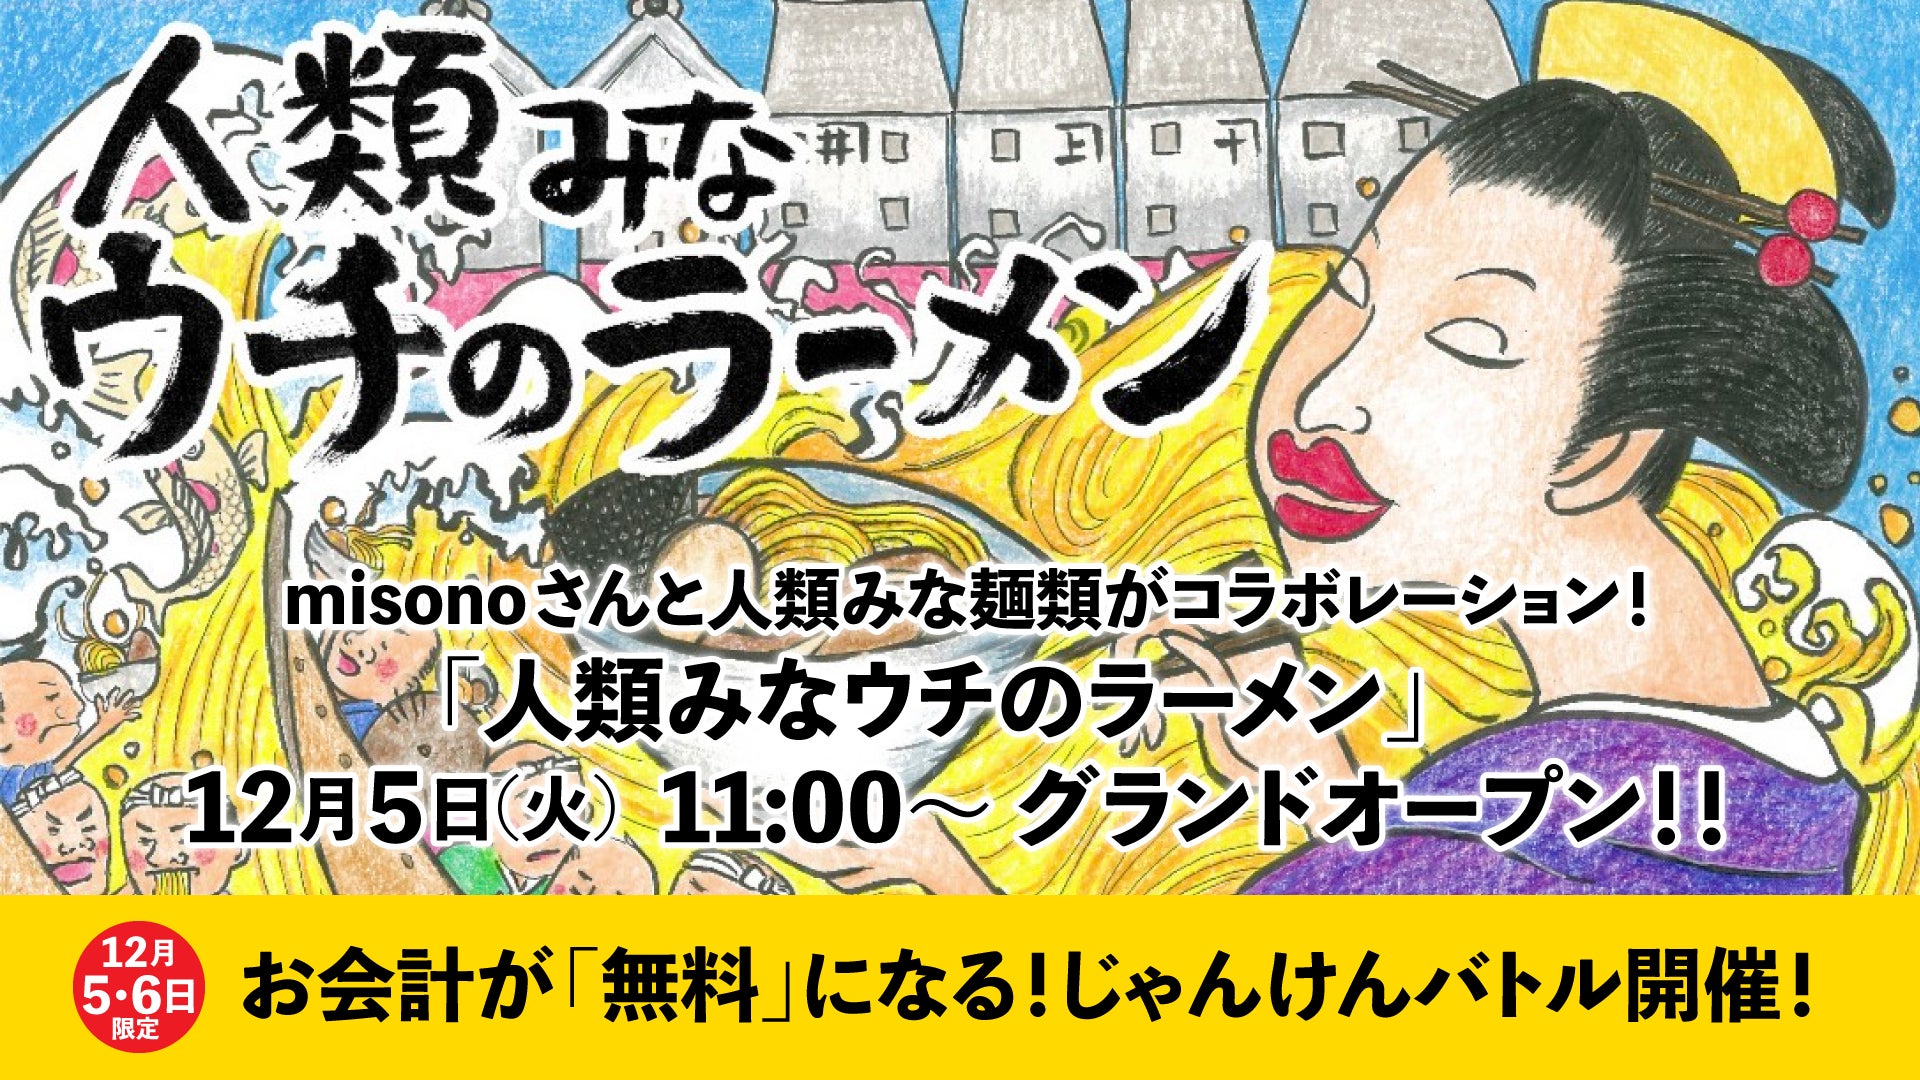 芸能人misonoさんと「人類みな麺類」がコラボレーションしたmisono Presents「人類みなウチのラーメン」が本日12/5グランドオープン！じゃんけんバトル開催中！